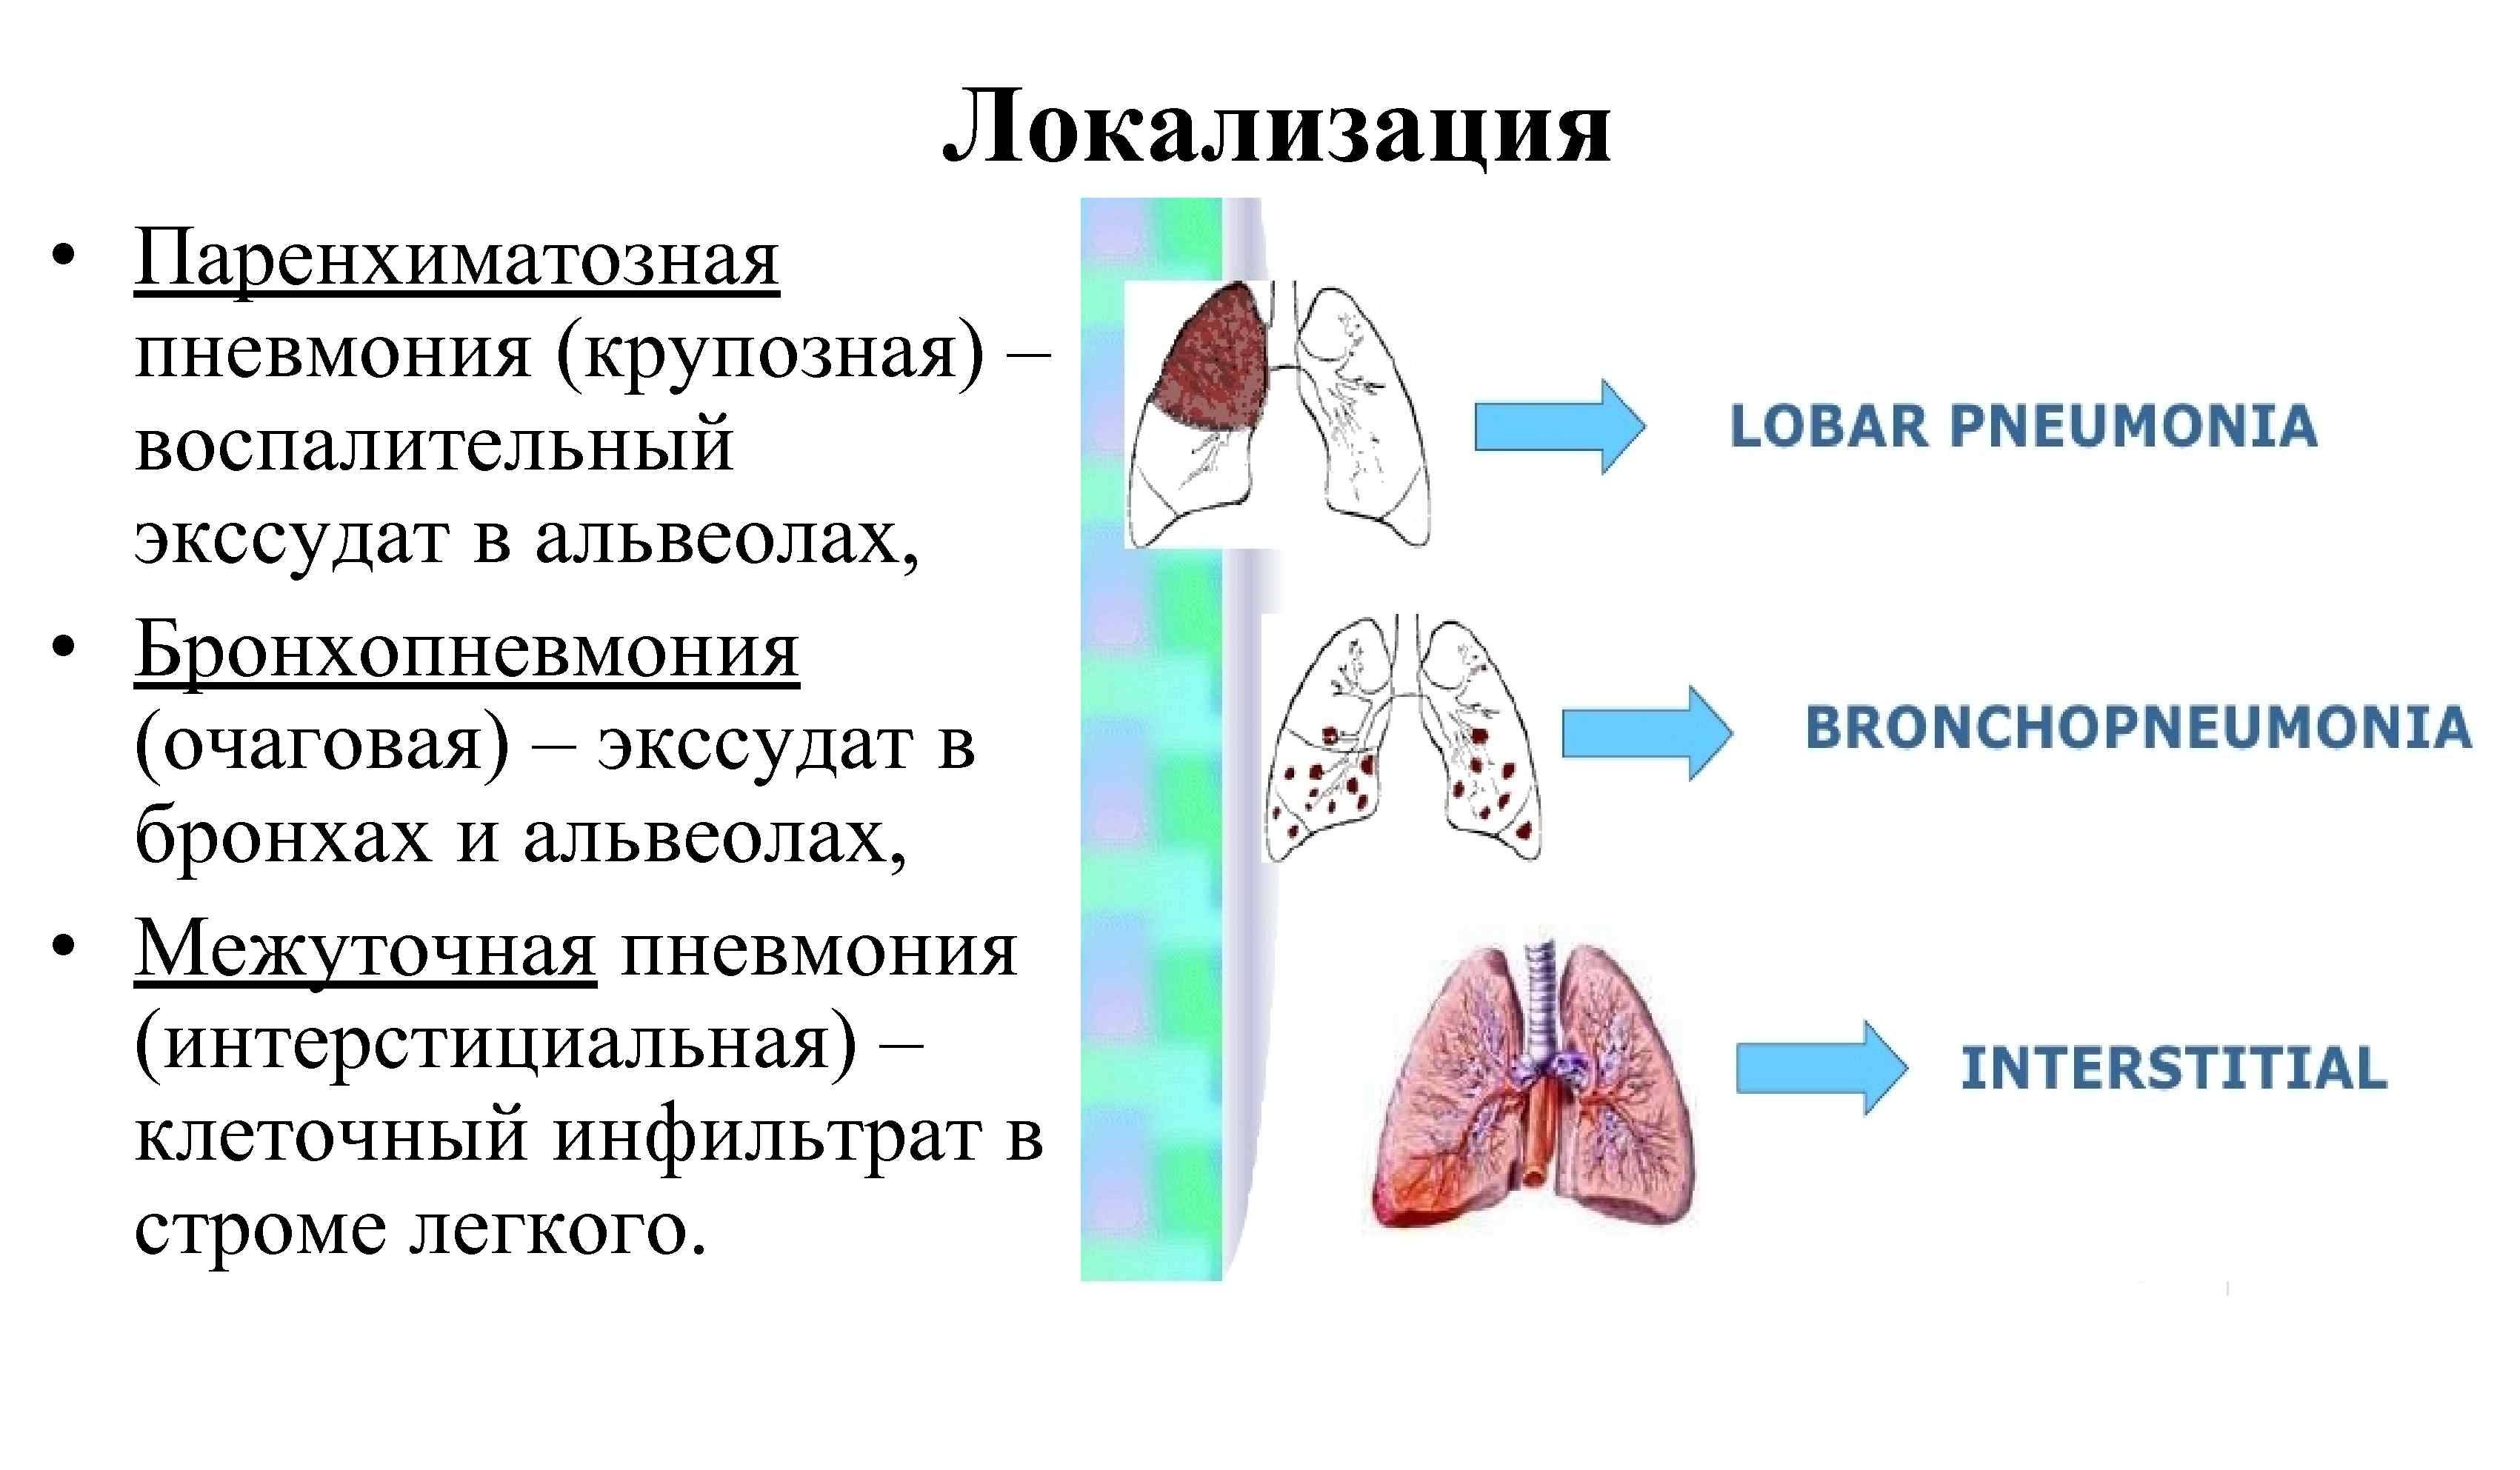 Крупозная пневмония: стадии, осложнения, лечение